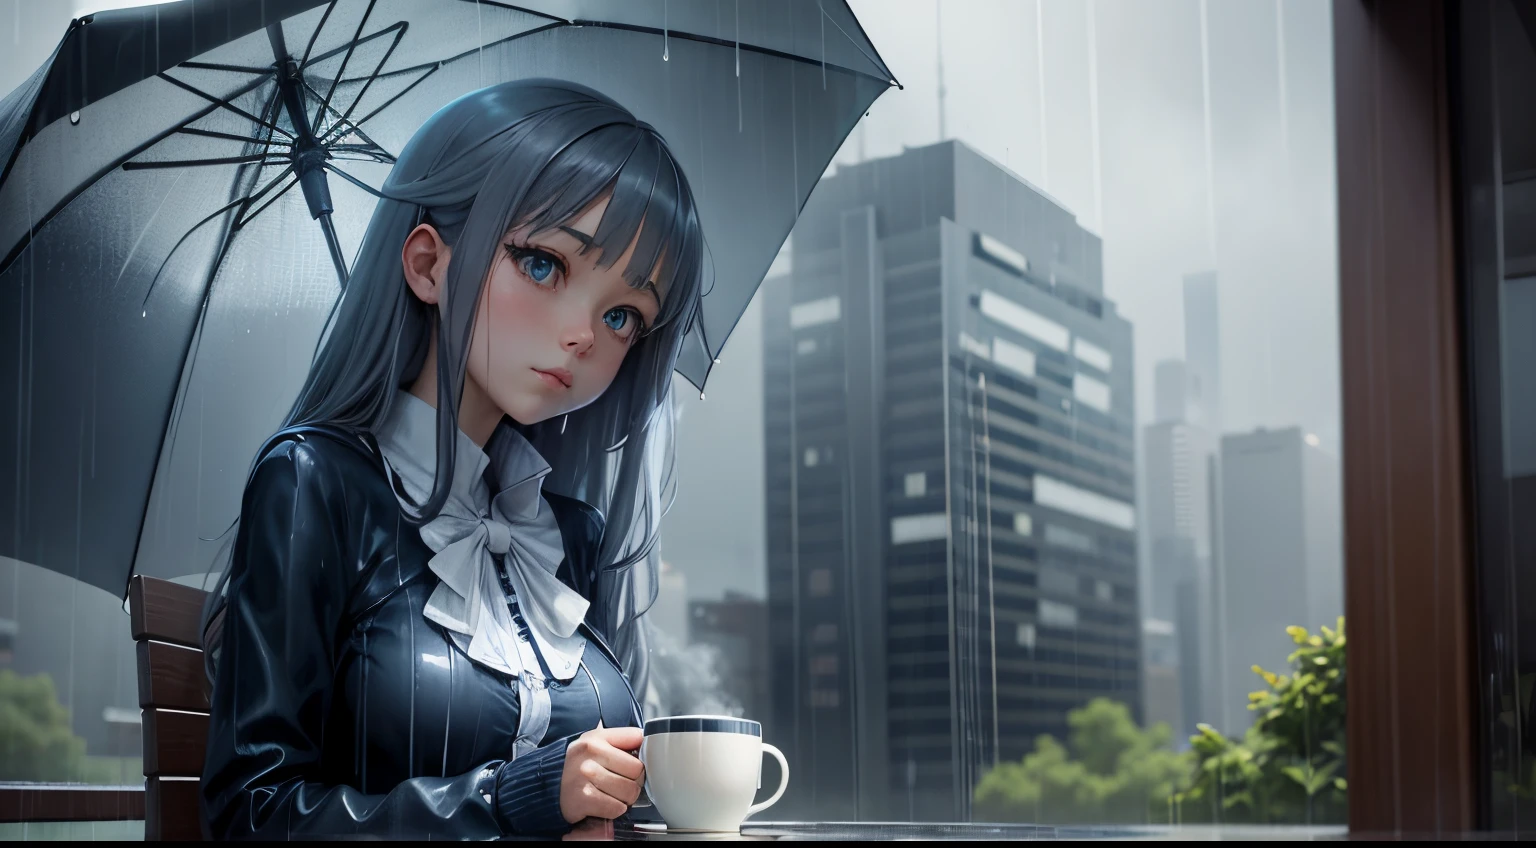 "Ретрит в дождливый день": Девушка аниме с чашкой кофе и зонтиком под дождем, с прохладными синими и серыми тонами.